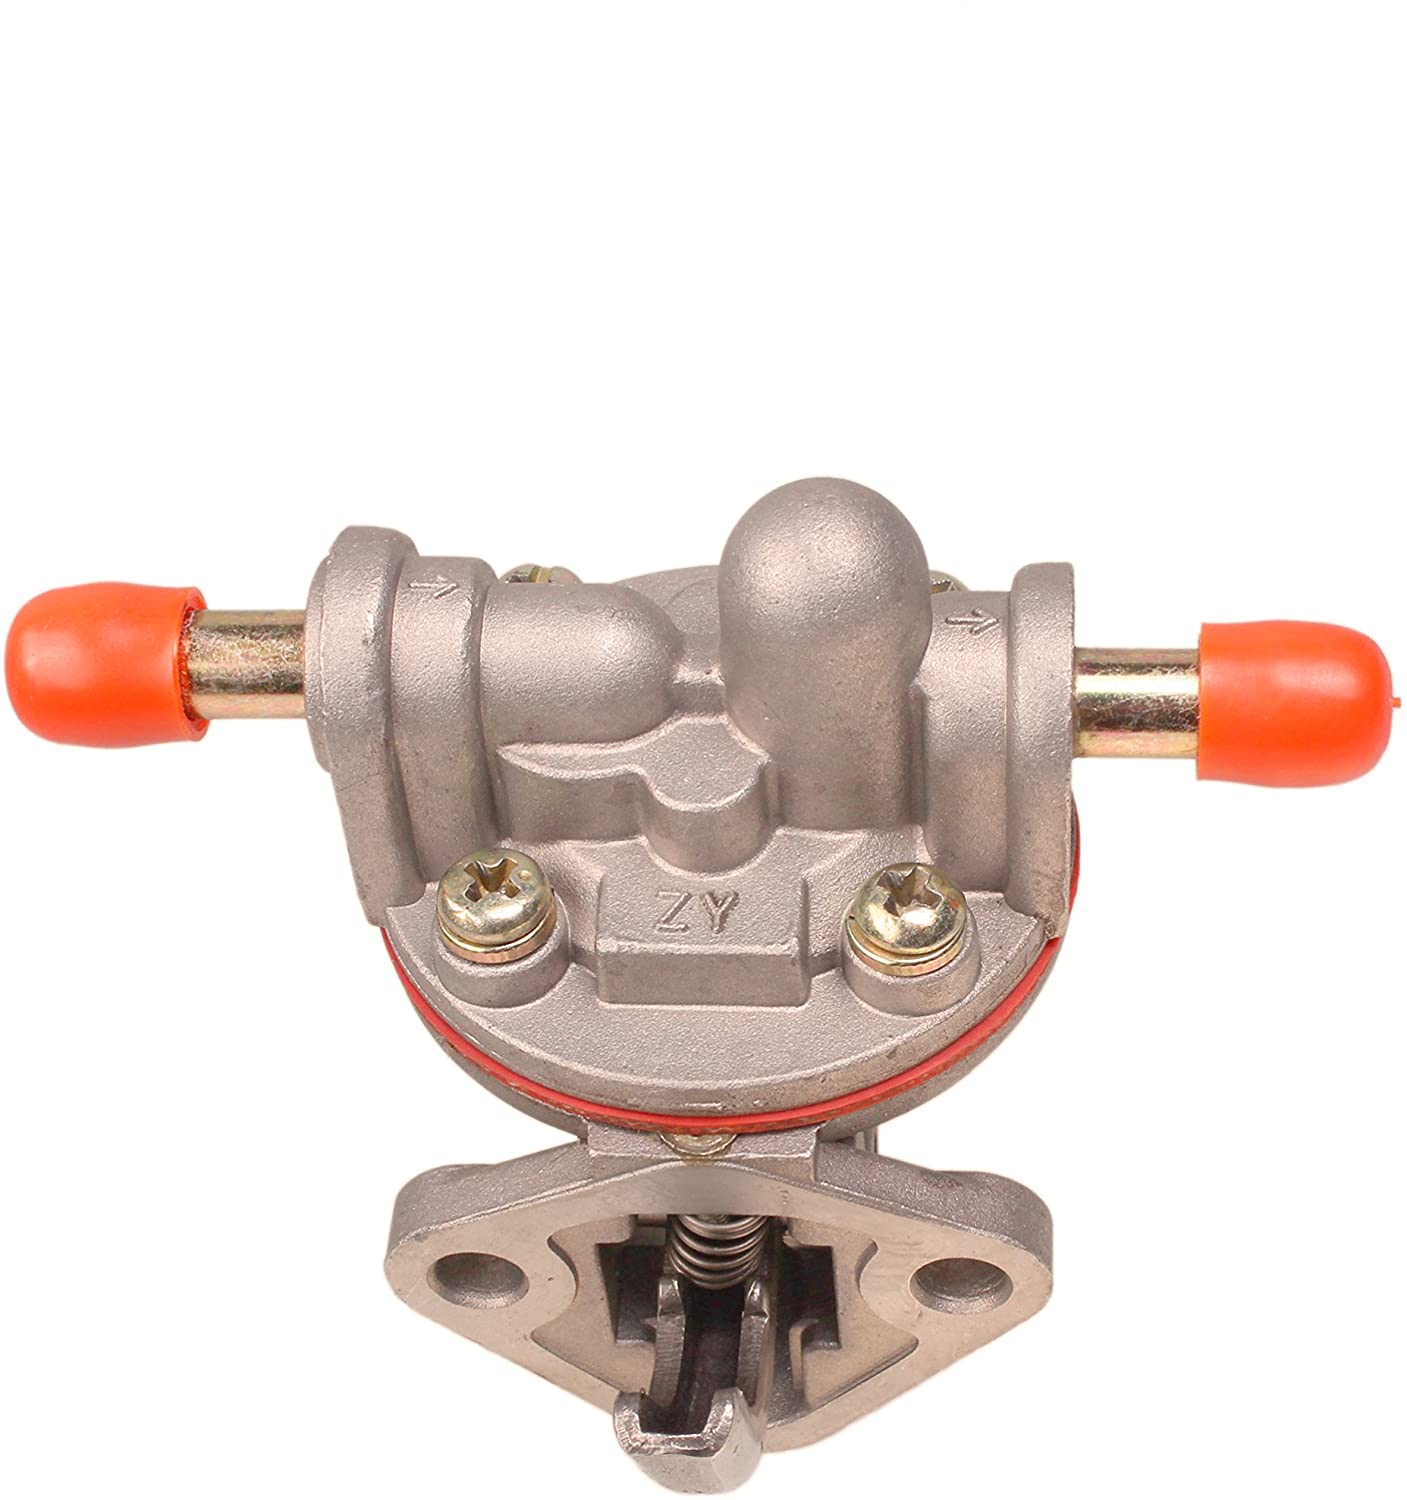 Fuel Pump 12581-52030 15821-52030 for Kubota Engine D662 D722 D750 D782 D850 D950 Z482 Z402 Z602 - KUDUPARTS